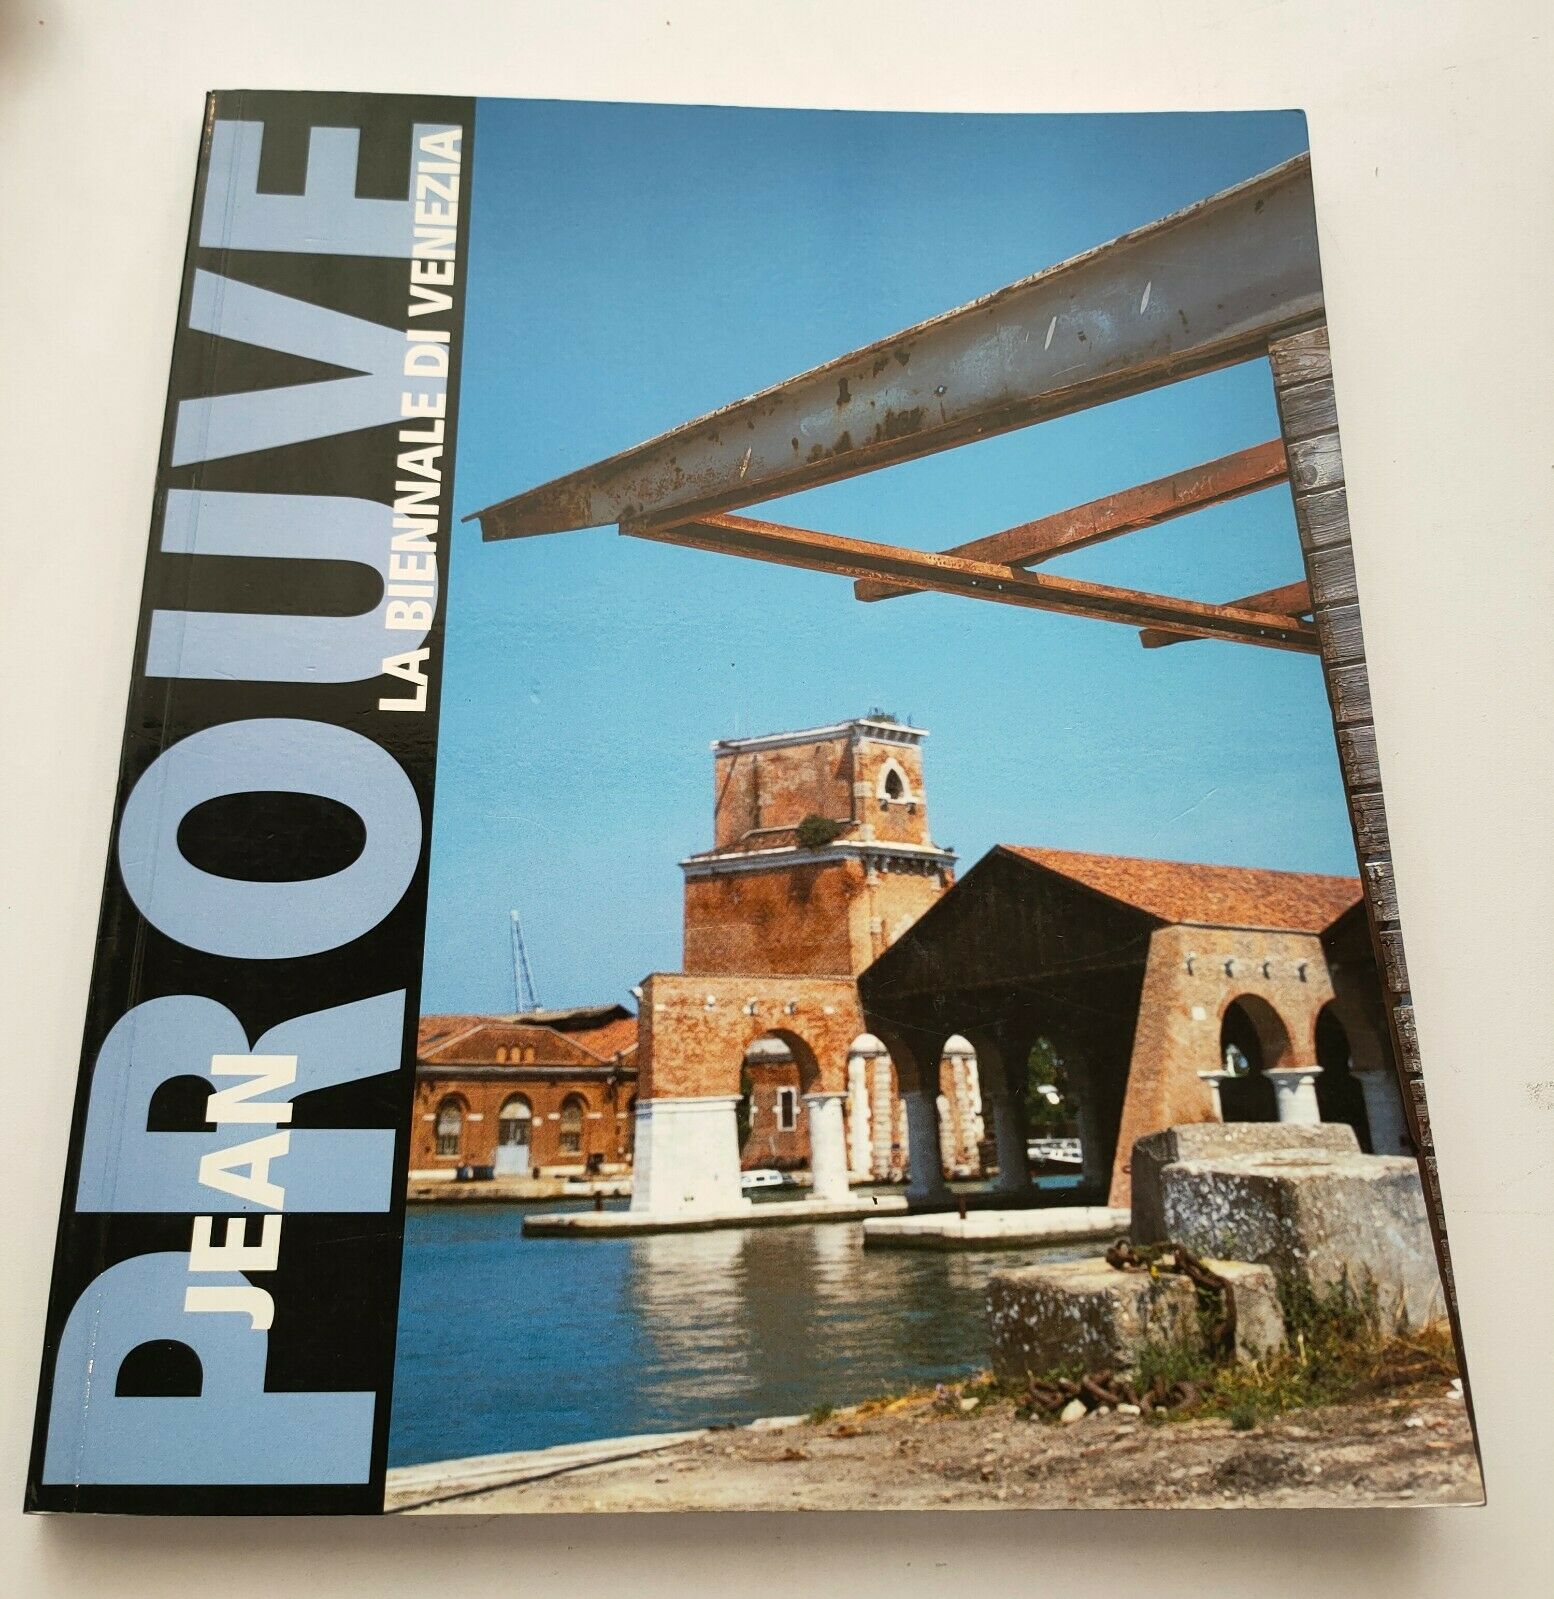 Featured image for “Jean Prouvé - La Biennale di Venezia / Galerie Jousse Seguin / 2000”